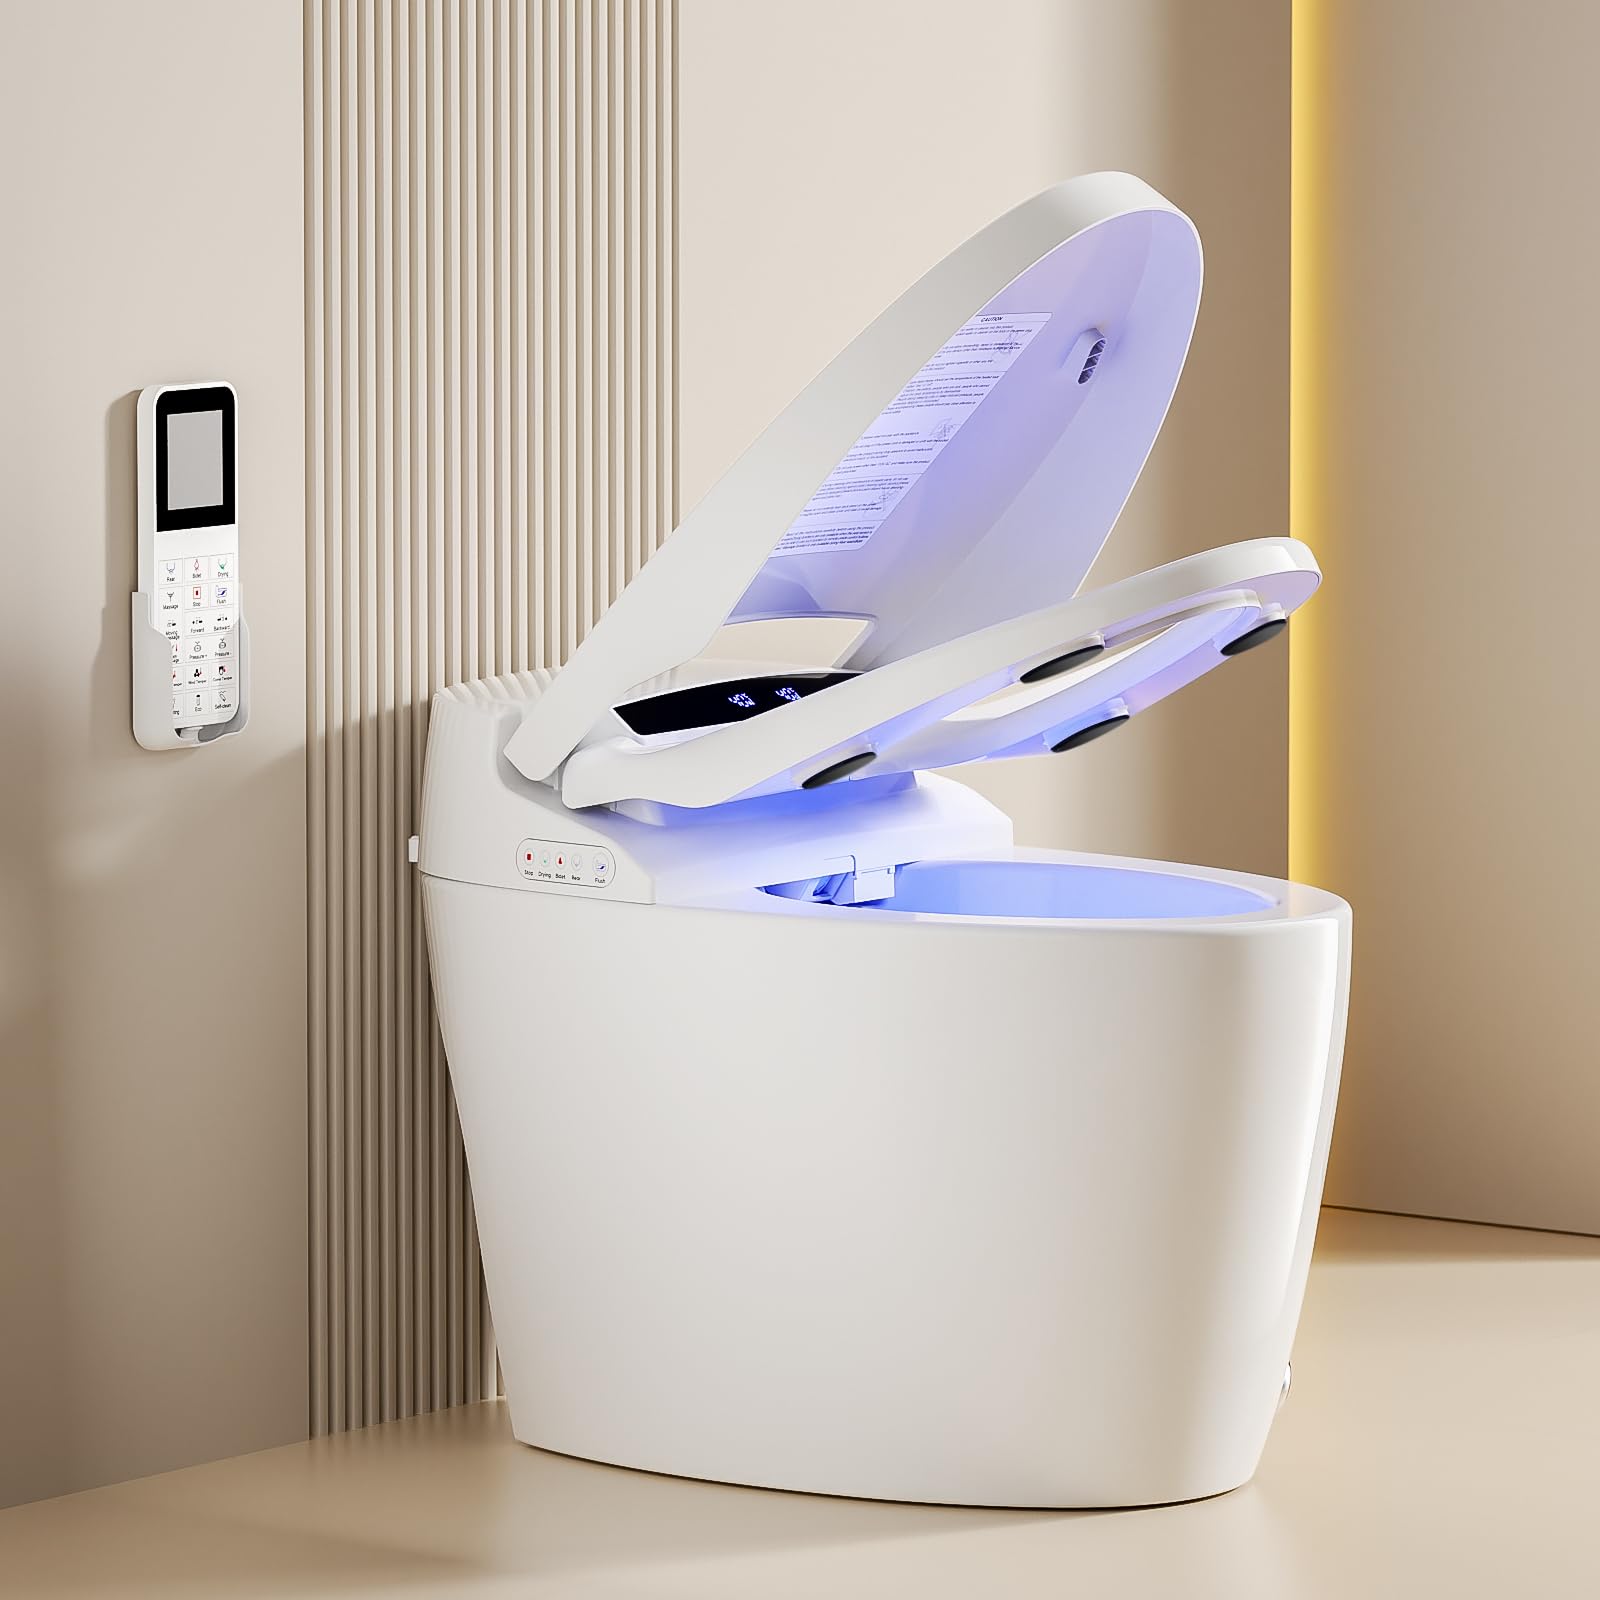 LOUPUSUO Luxury Smart Toilet